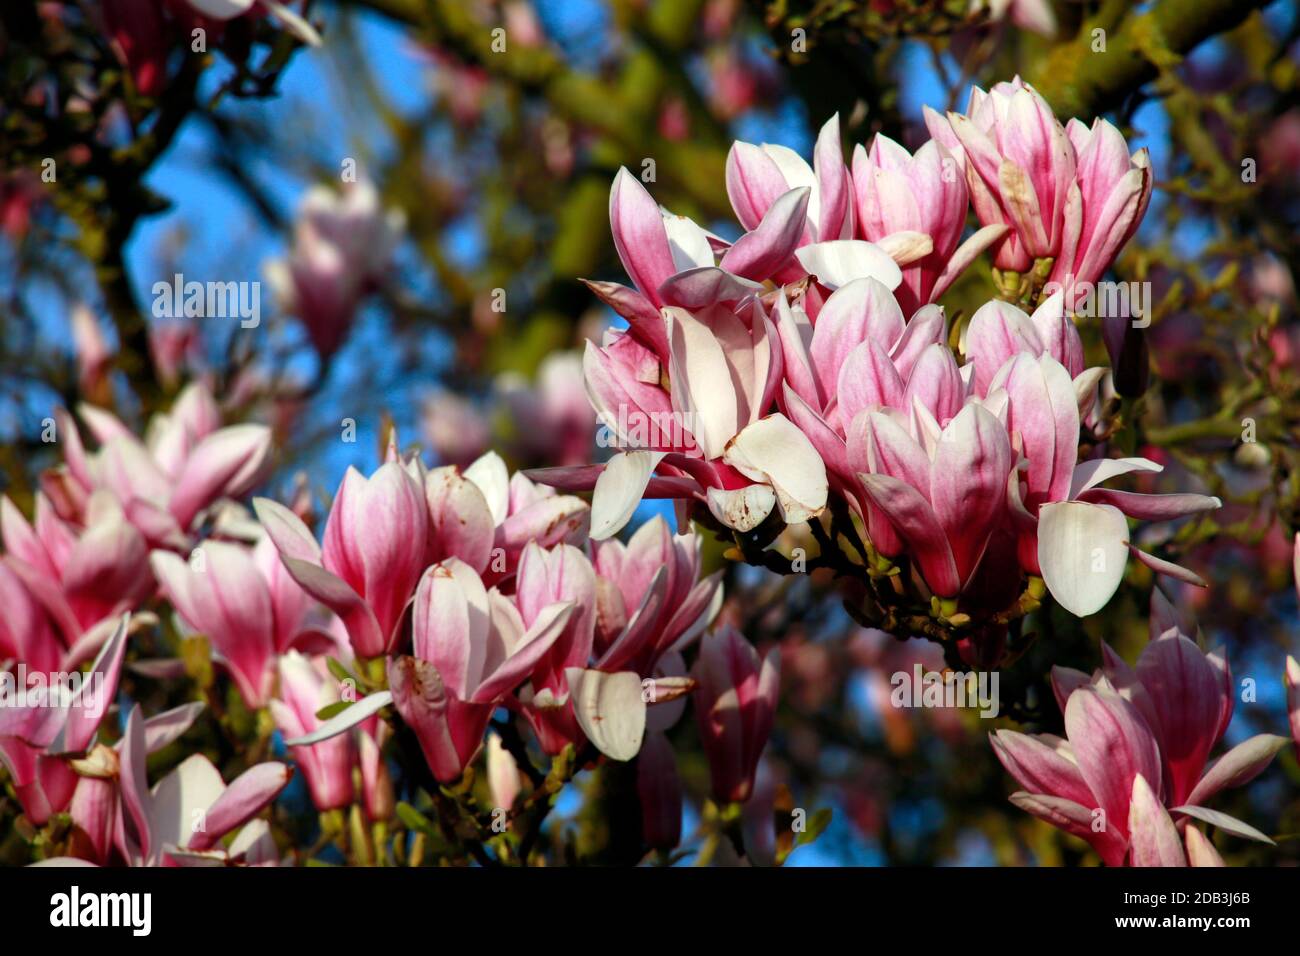 Blütenpracht einer Magnolie (Magnolia) Hybride im Frühling Foto Stock